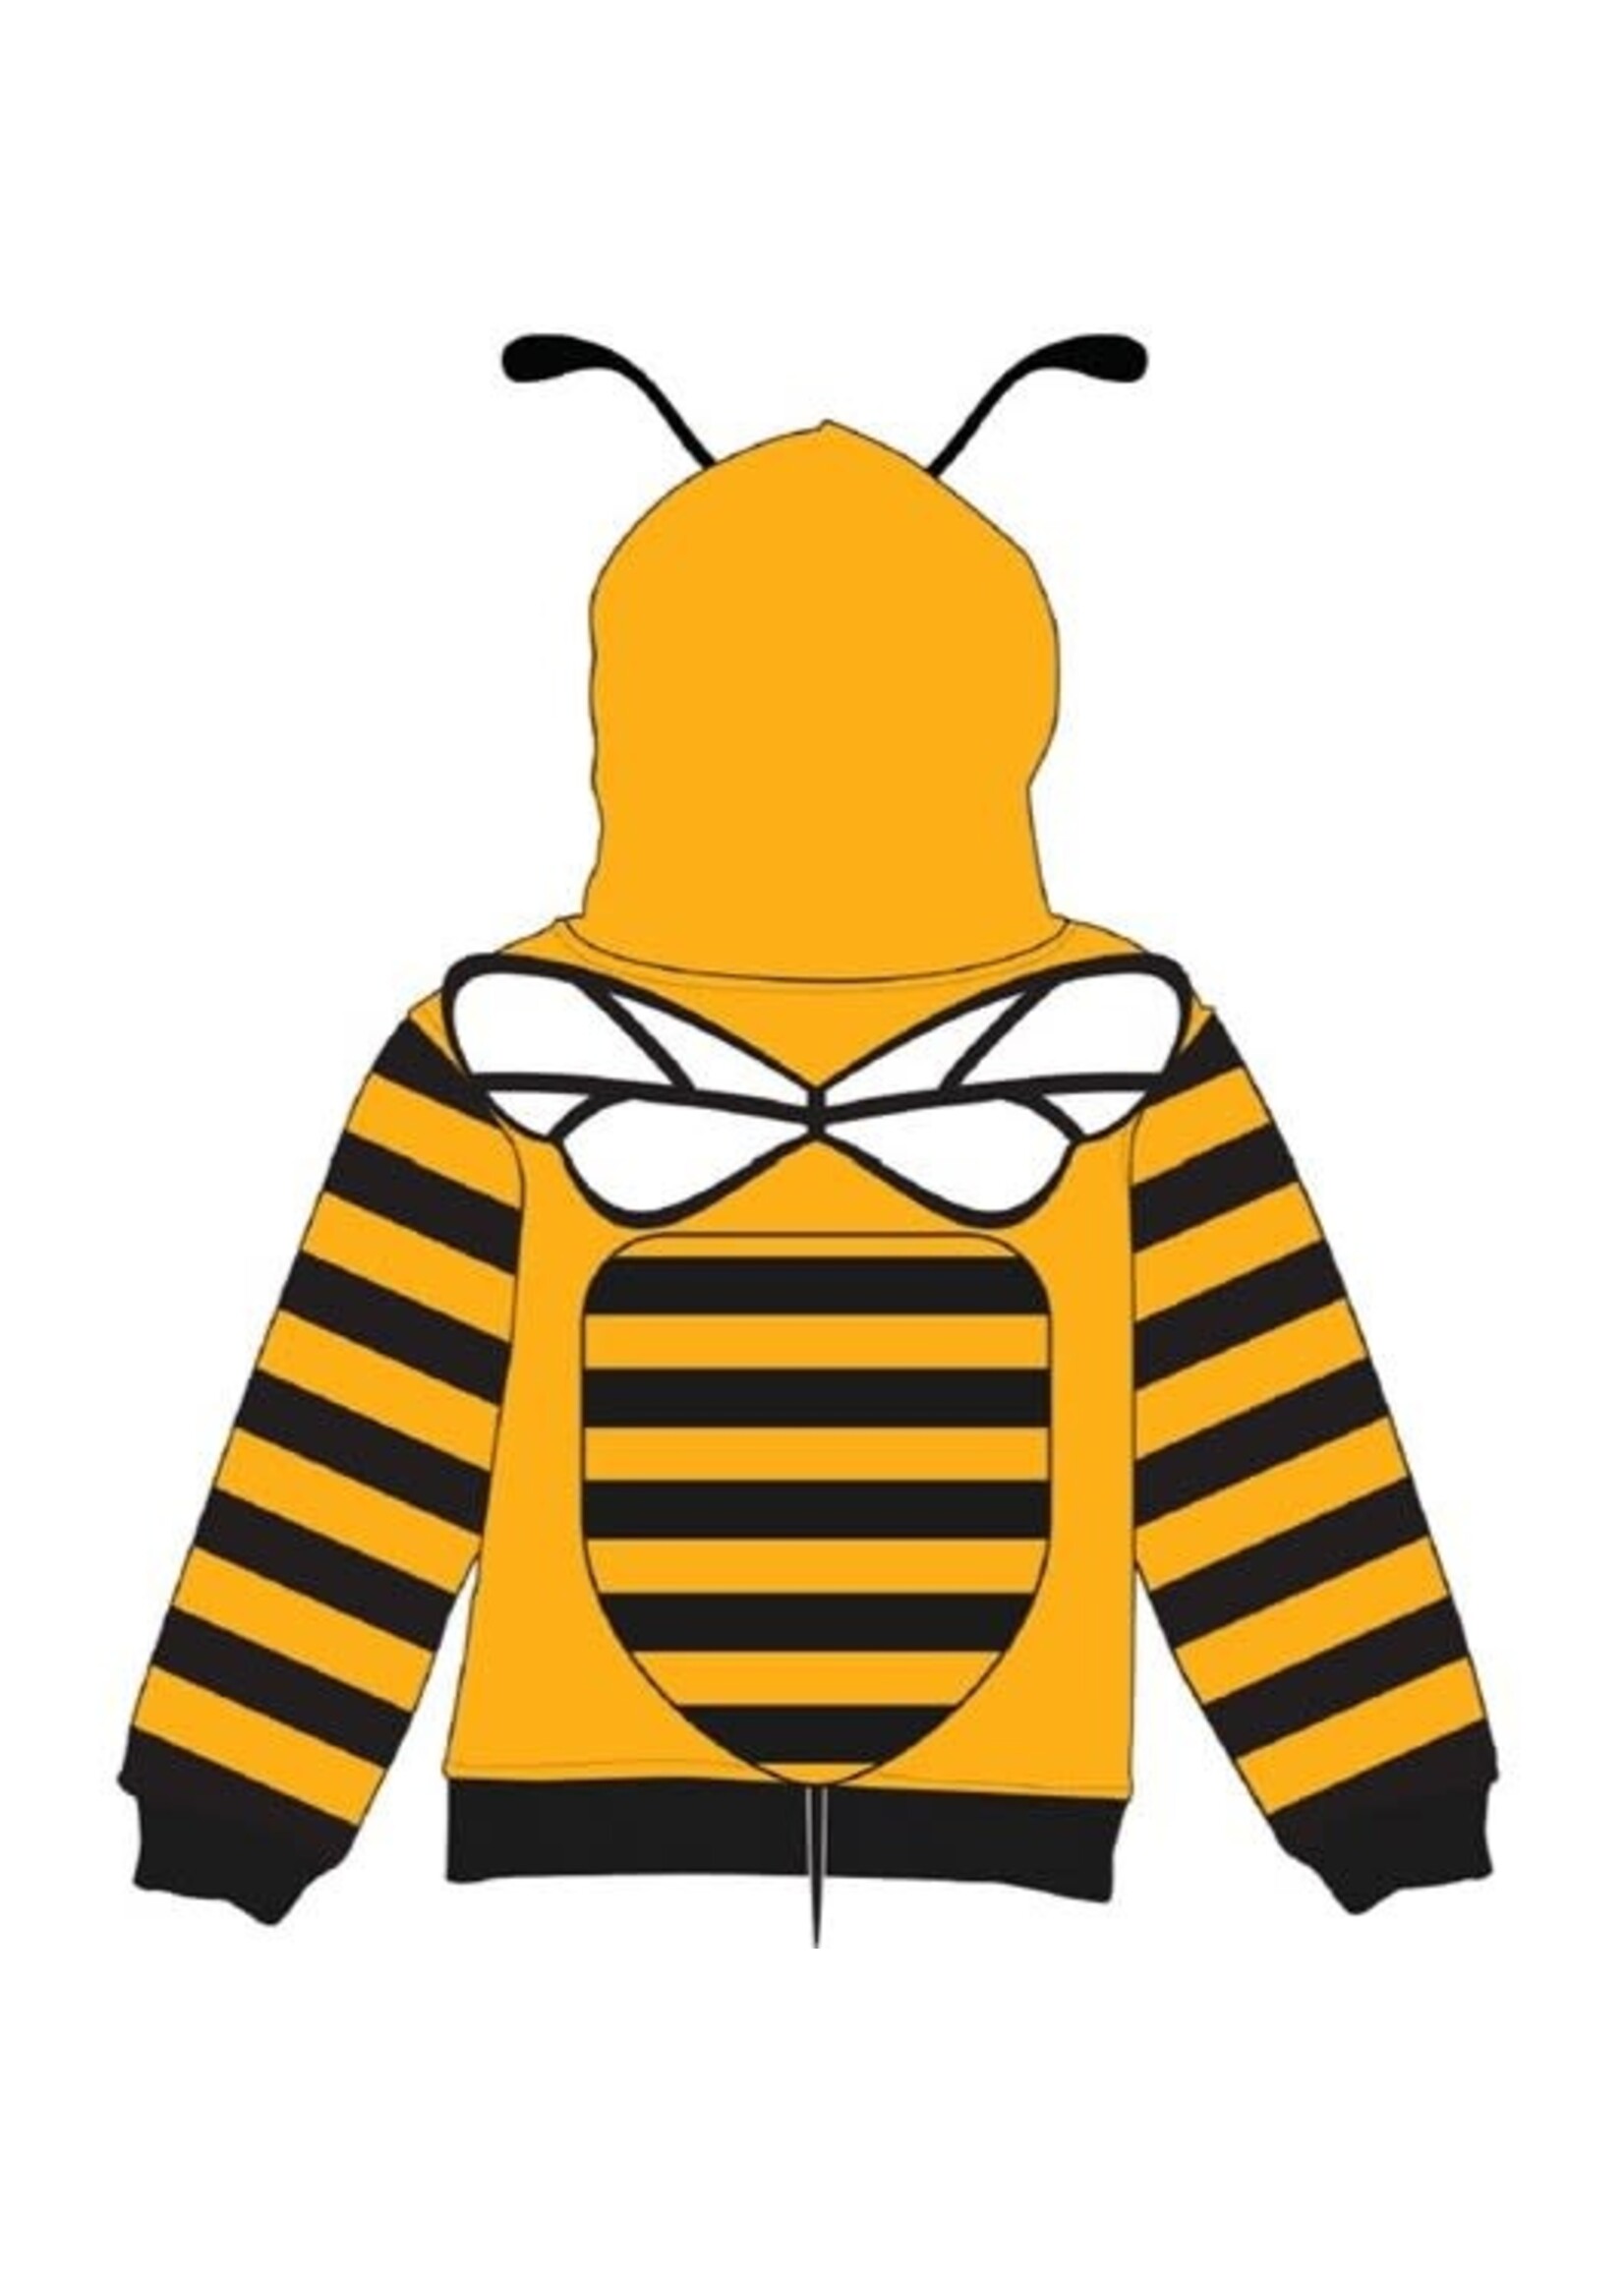 Buzz the Bee 3D Hoodie